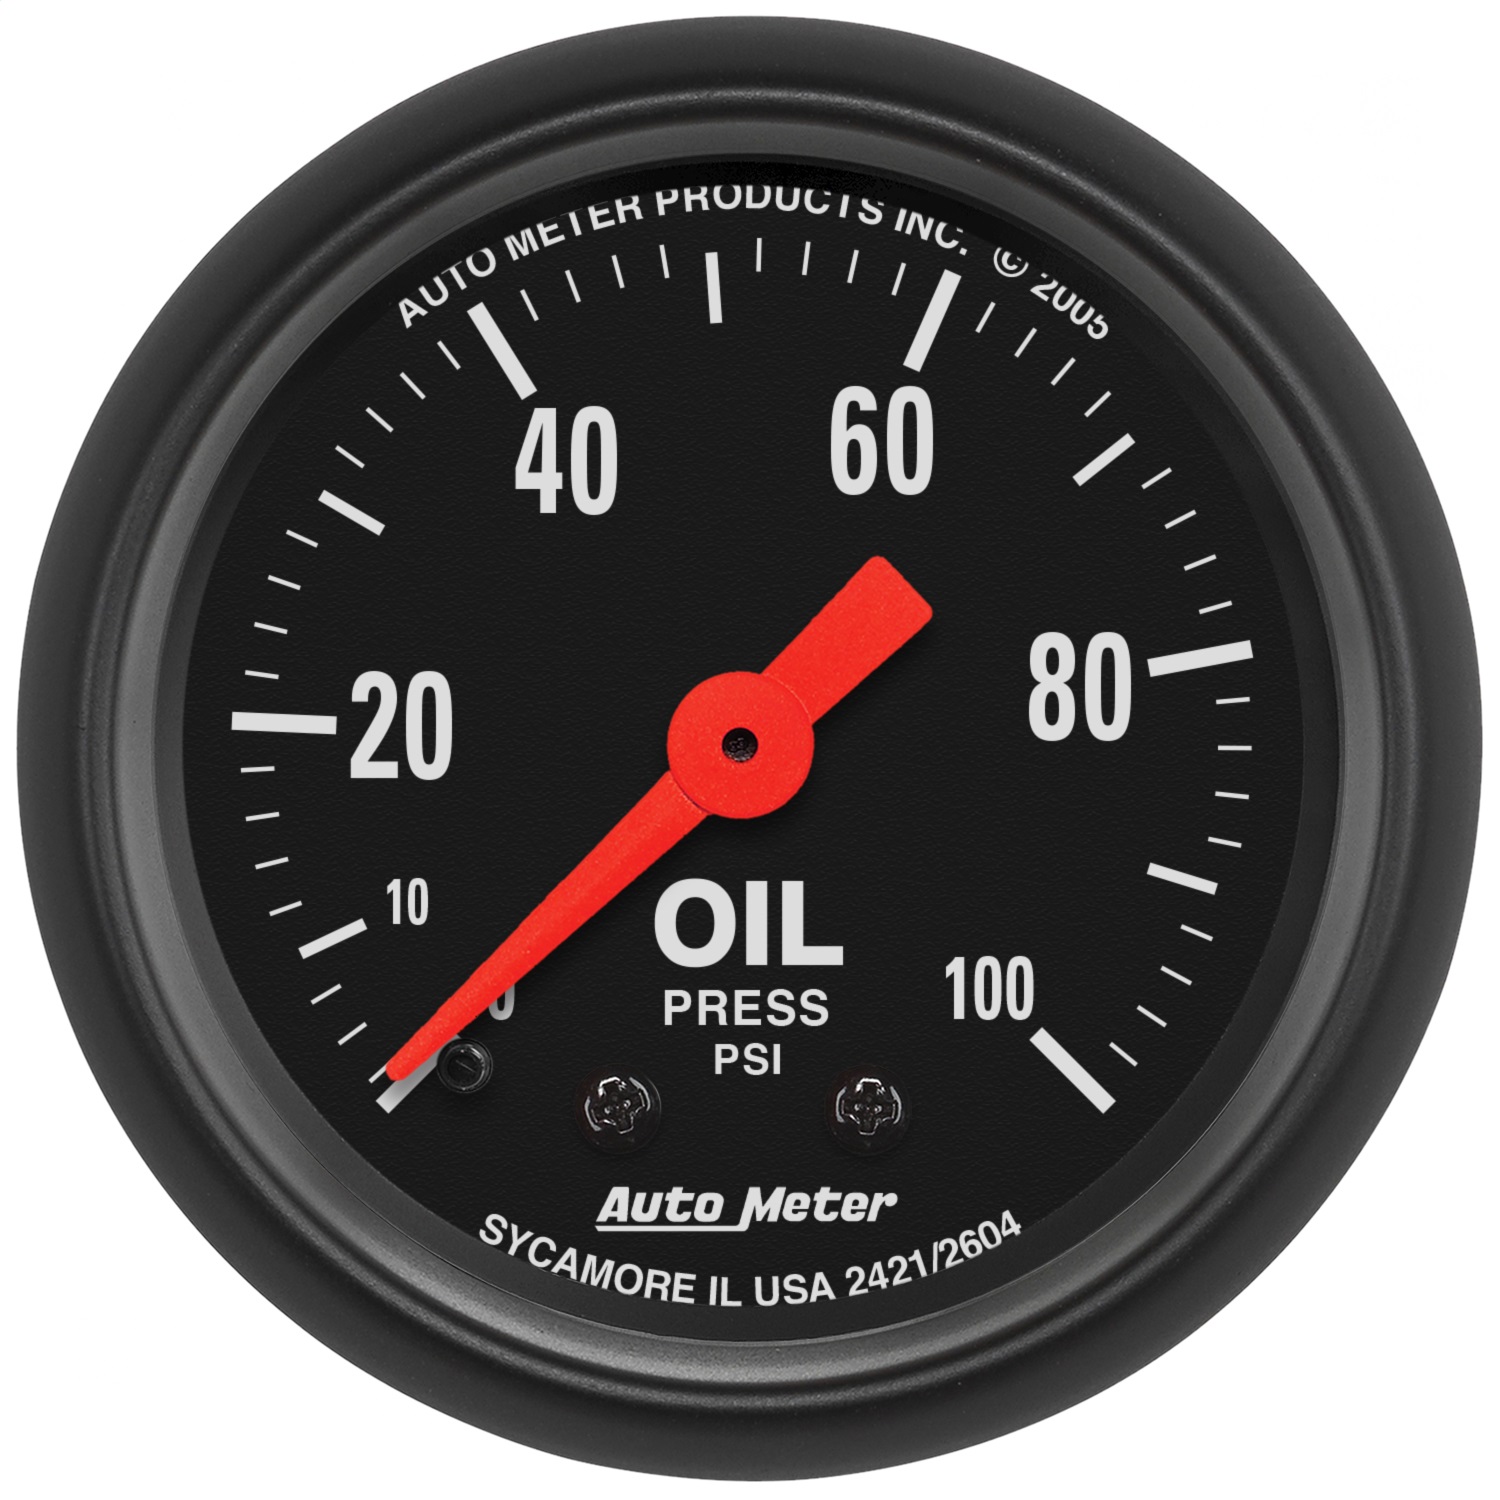 Auto Meter Auto Meter 2604 Z-Series; Mechanical Oil Pressure Gauge